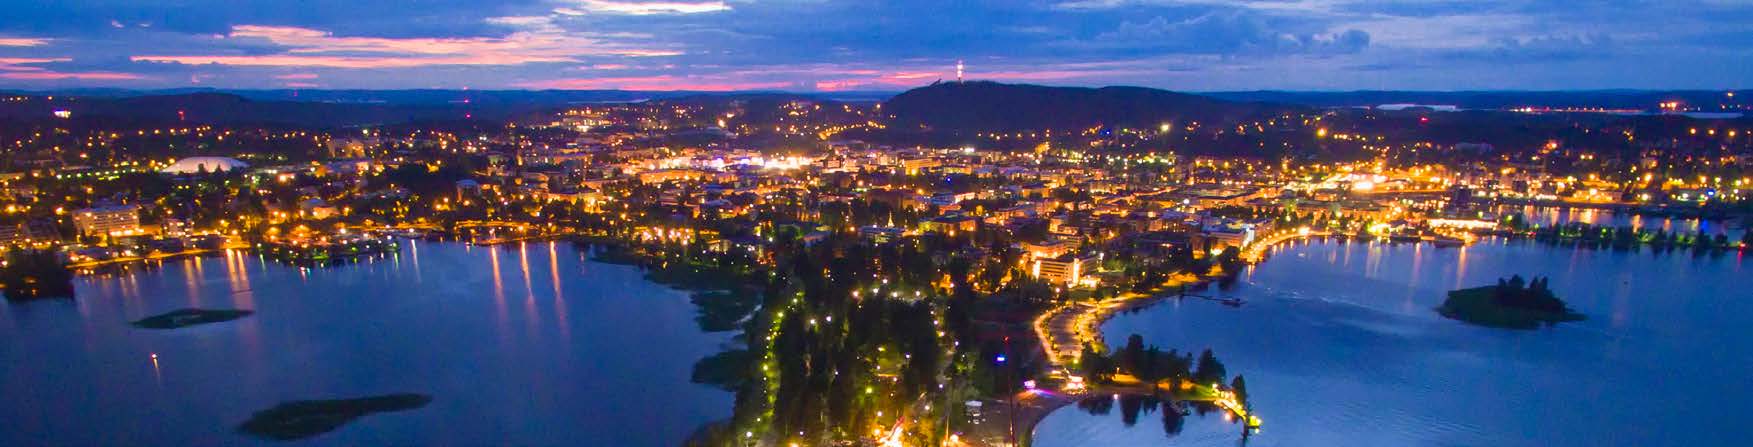 TÄHTITAPAHTUMAT Tähtitapahtumat ovat toistuvia Kuopion-Tahko alueelle omaleimaisia merkittäviä tapahtumia ja tapahtumailmiöitä, jotka ainutlaatuisuudellaan tai muilla arvoillaan profiloivat kaupunkia